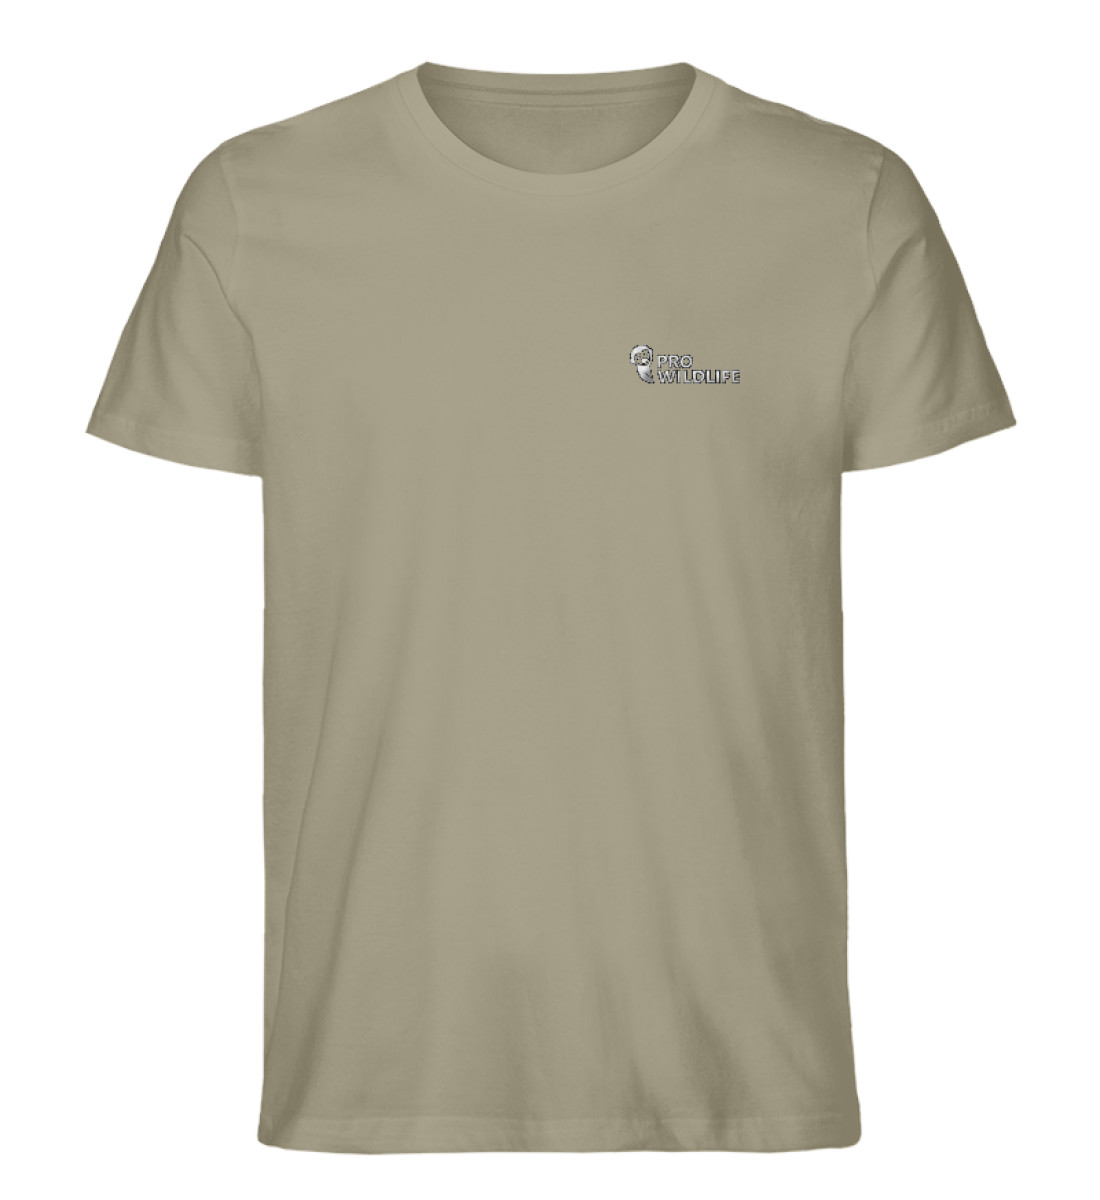 Shirt Pro Wildlife weißer Stick - Herren Premium Organic Shirt mit Stick-651